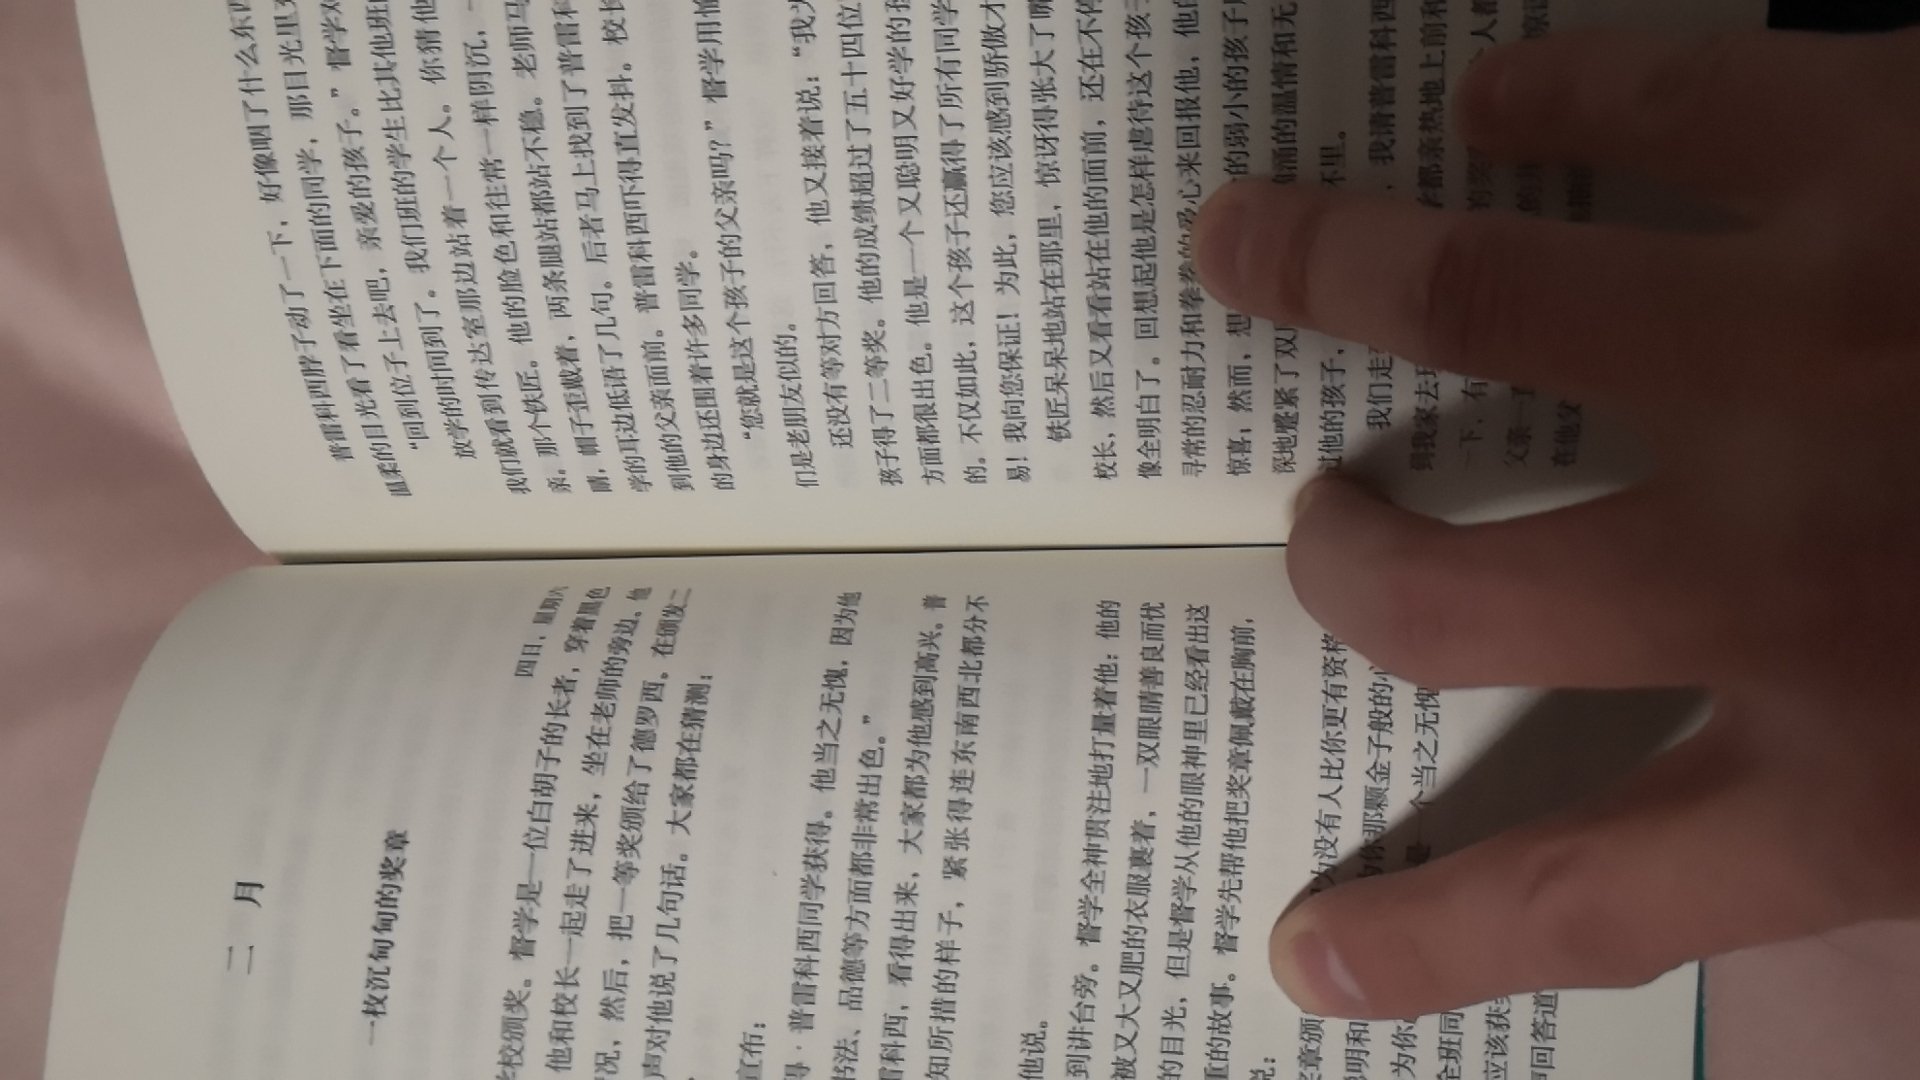 上海译文的书，九十九块钱十本，超级划算啊